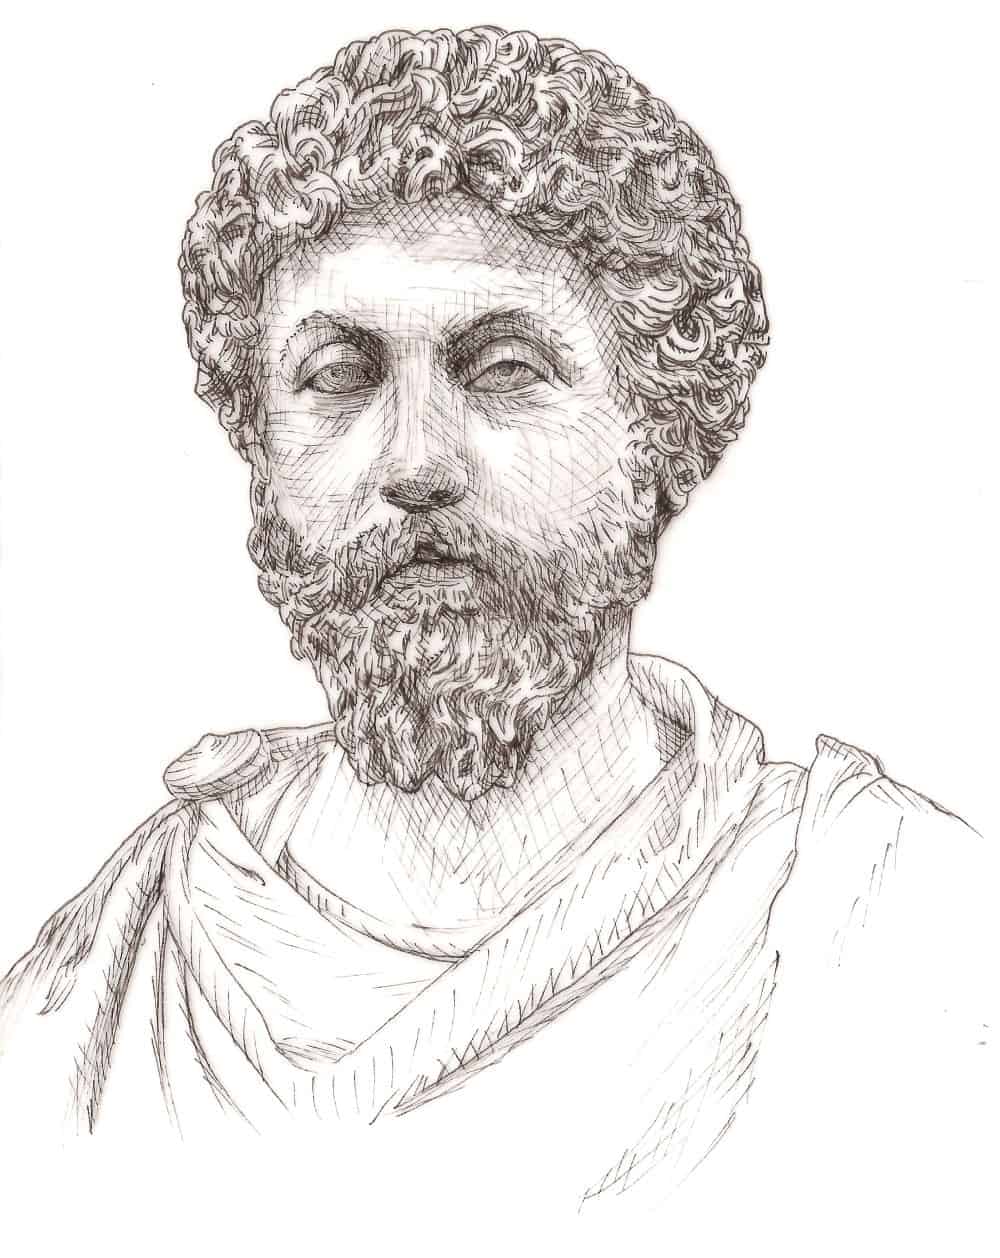 Marc Aurel - römischer Kaiser und stoischer Philosoph